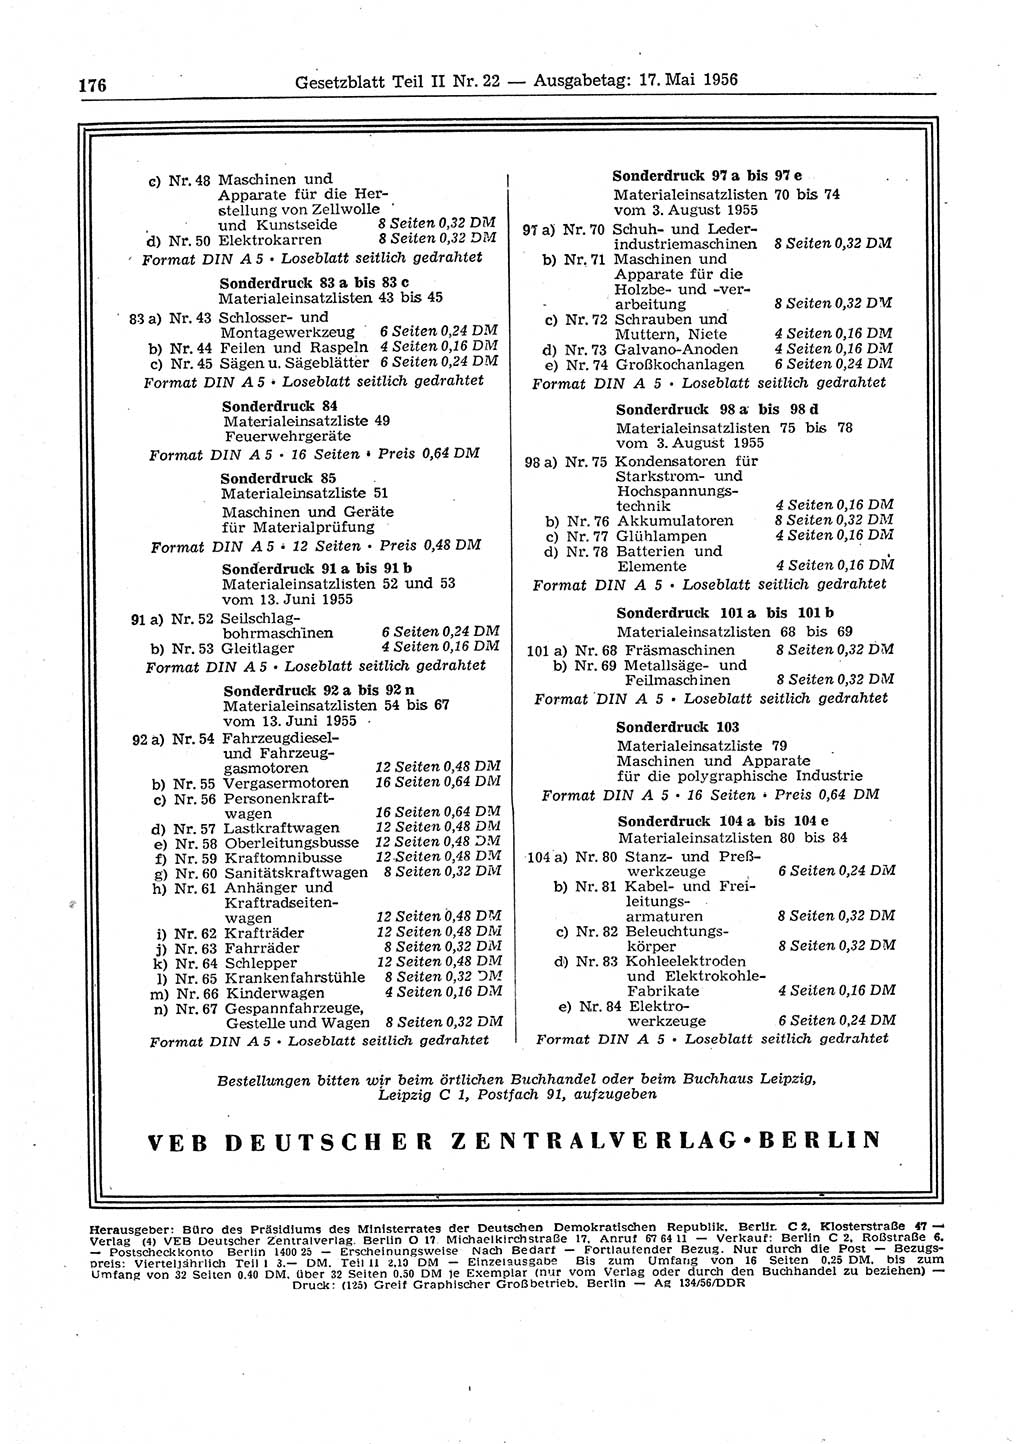 Gesetzblatt (GBl.) der Deutschen Demokratischen Republik (DDR) Teil ⅠⅠ 1956, Seite 176 (GBl. DDR ⅠⅠ 1956, S. 176)